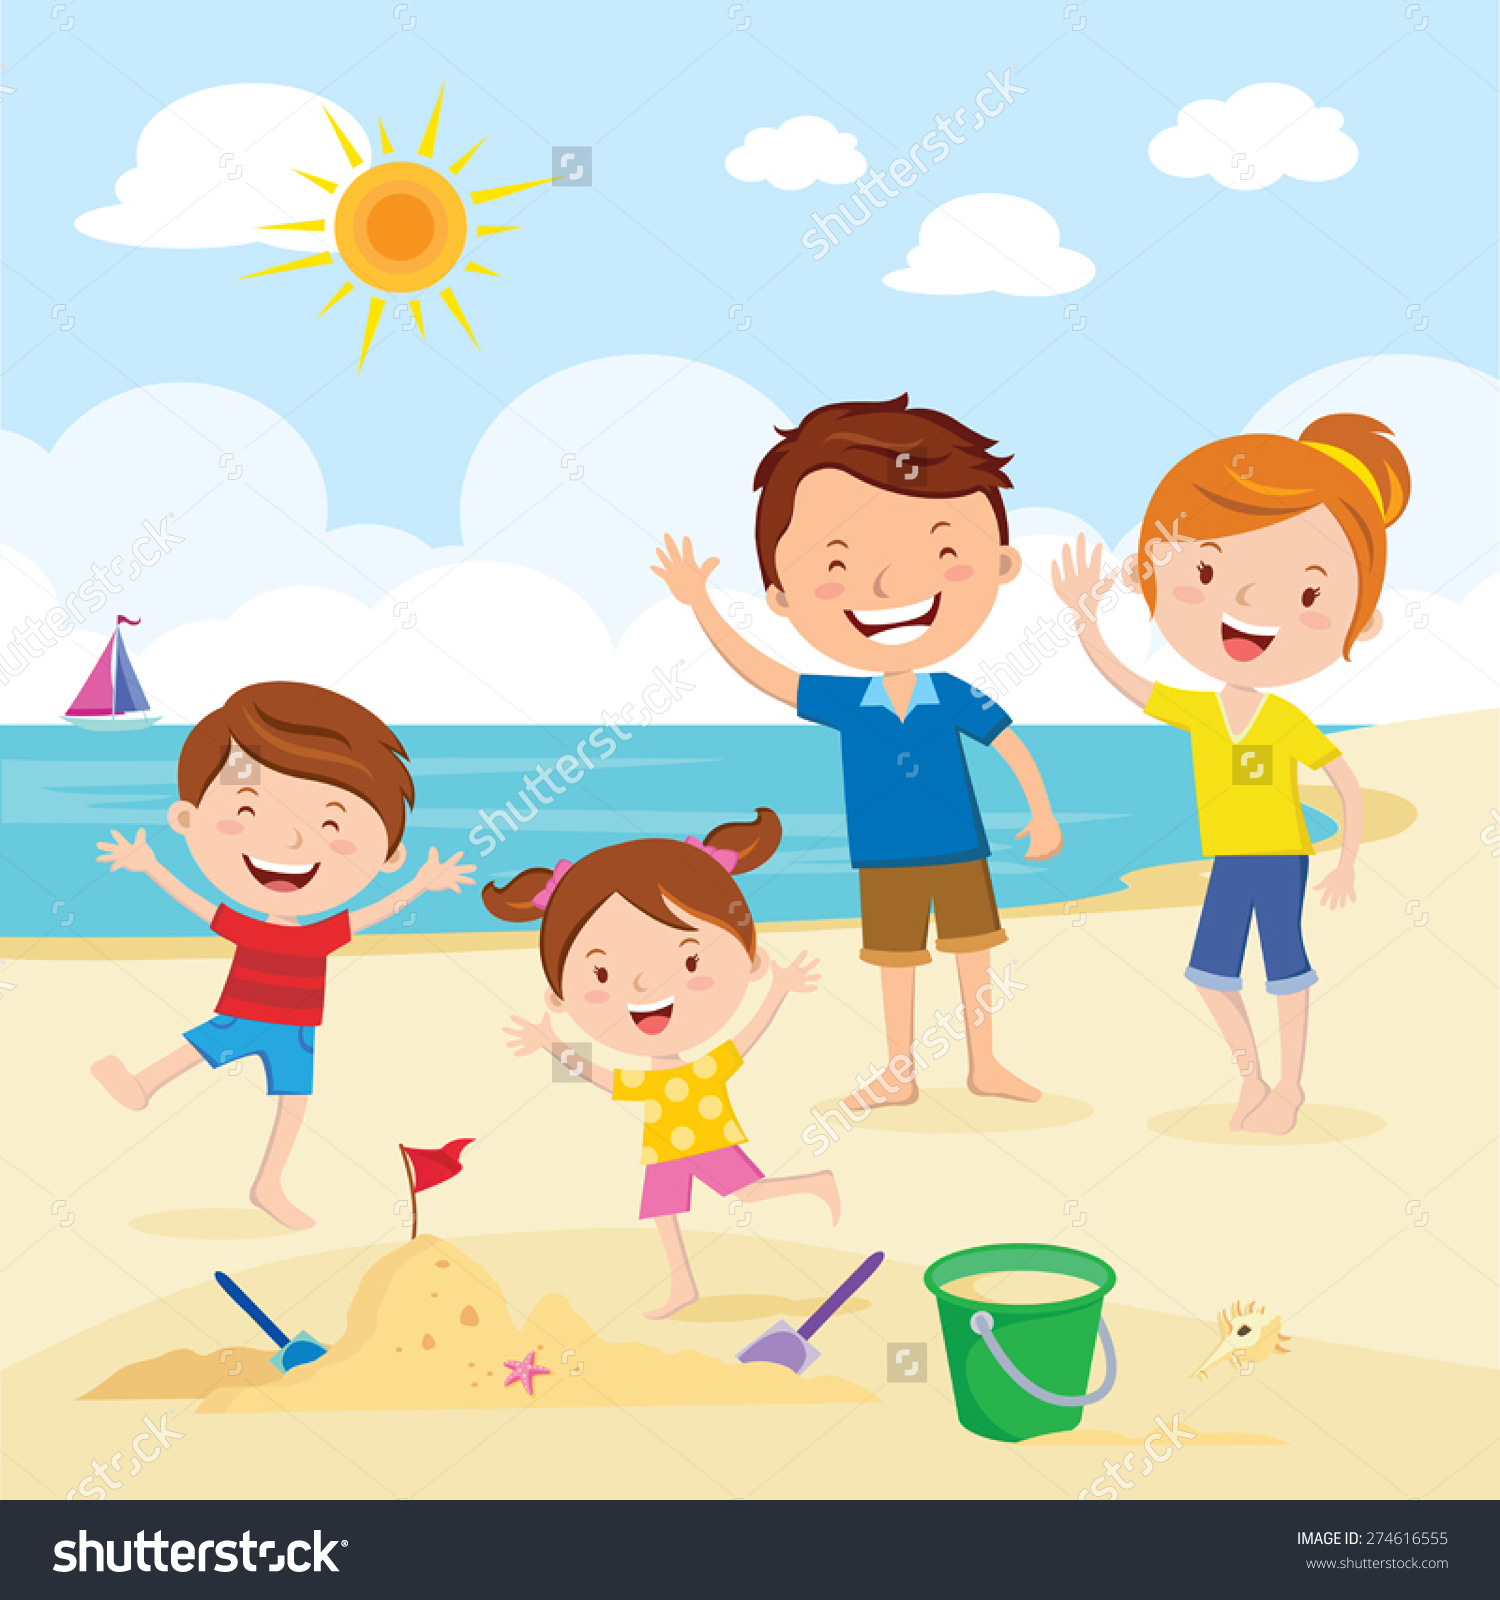 beach clipart for beach clipart download 31671